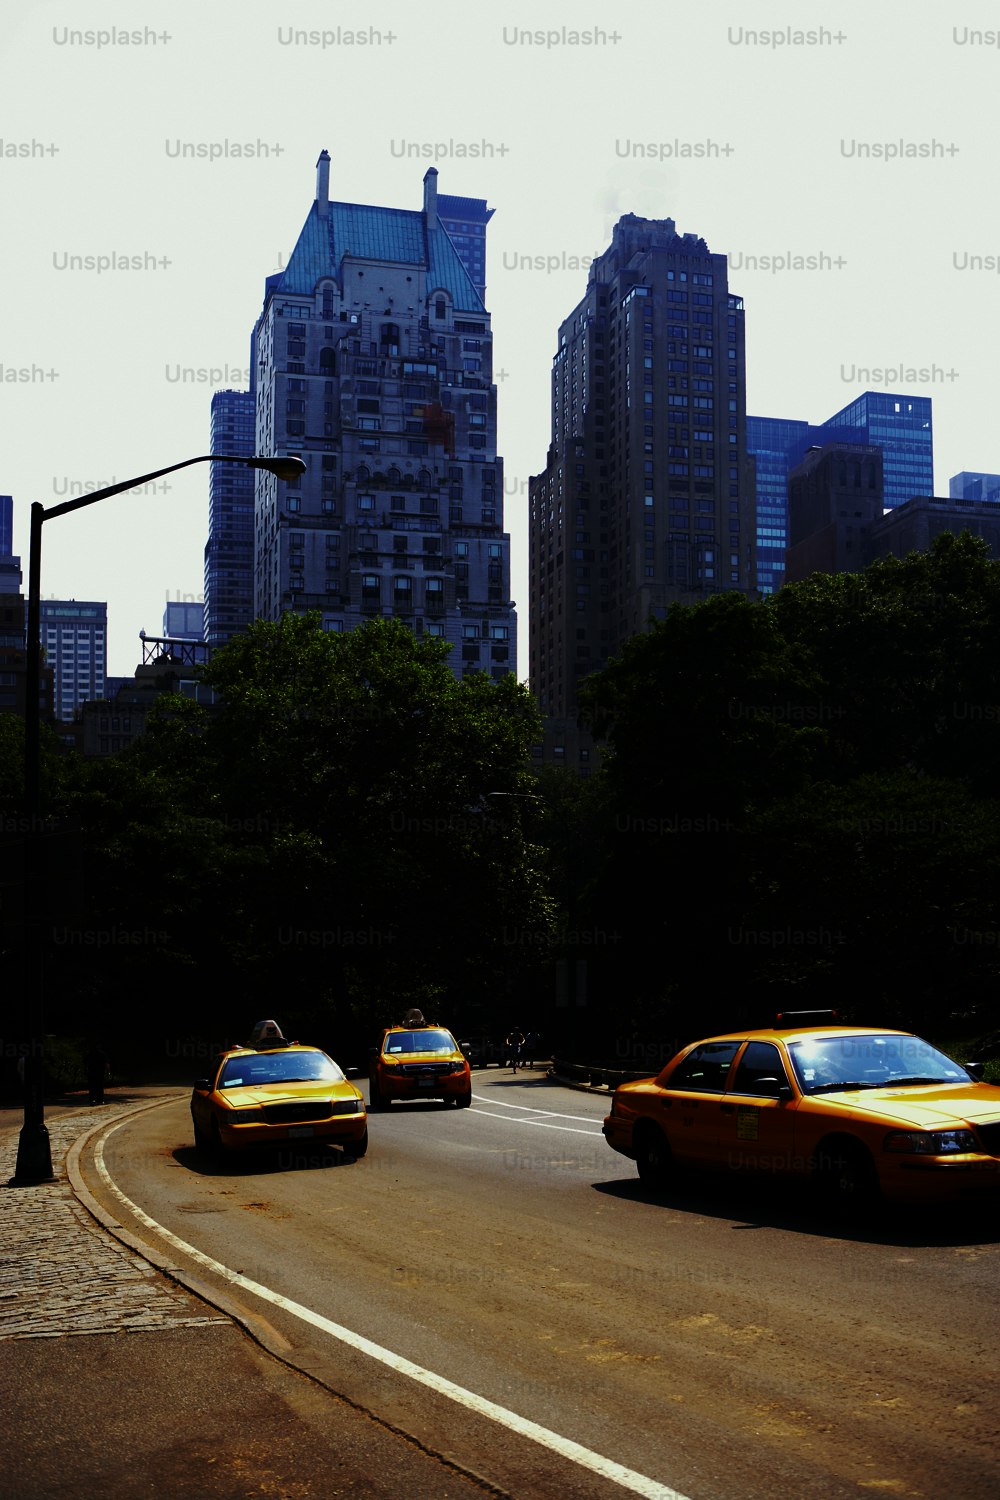 Un grupo de taxis conduciendo por una calle junto a edificios altos